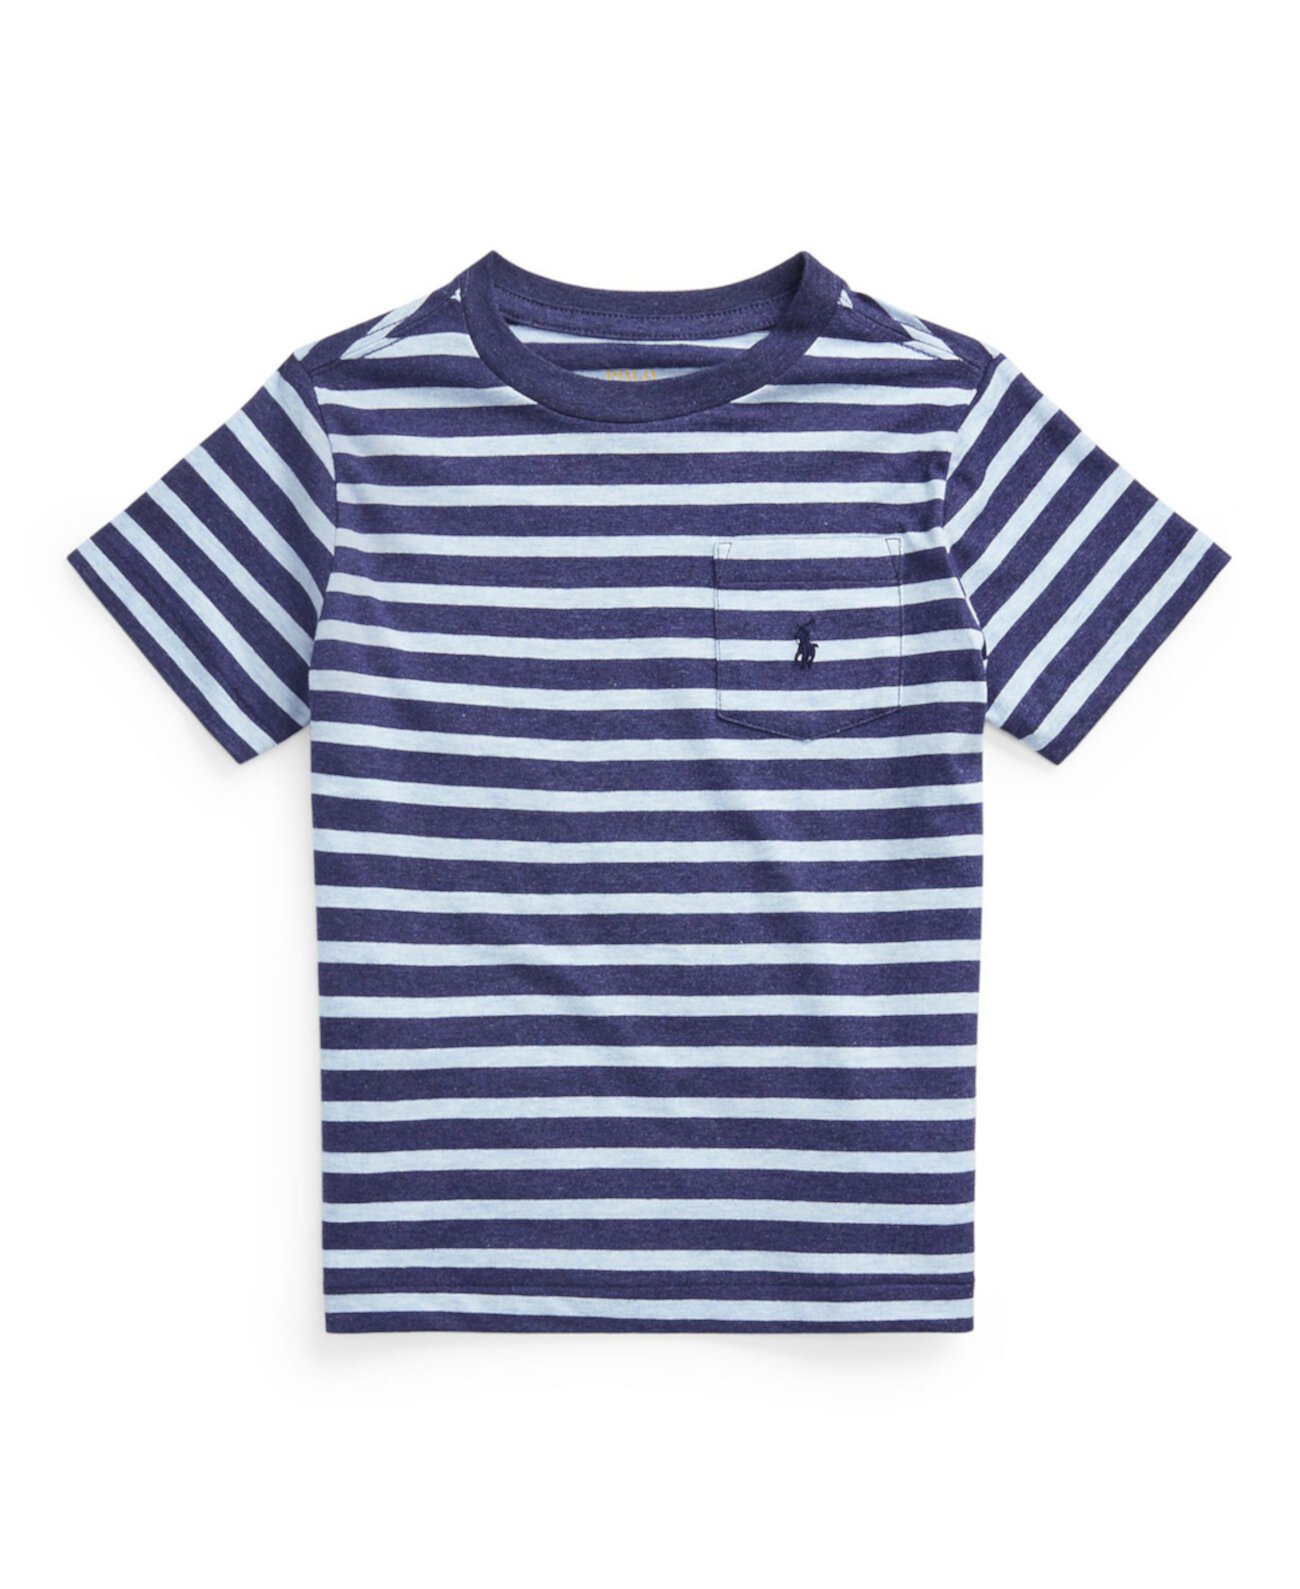 Полосатая футболка с карманами и хлопковыми карманами для маленьких мальчиков Ralph Lauren